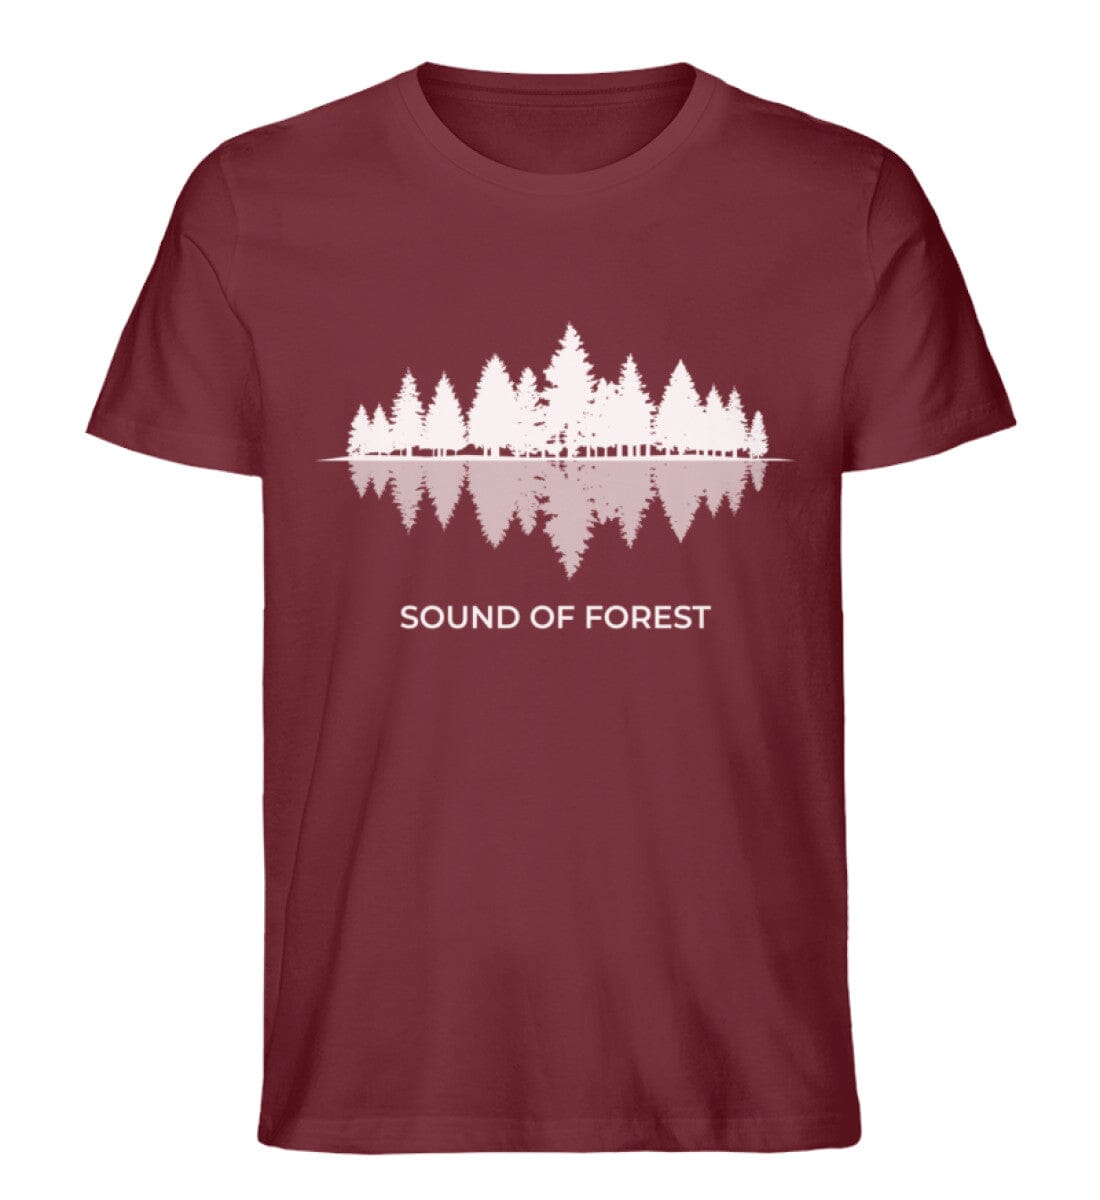 Sound of Forest - Unisex Premium Bio Shirt Burgundy S 